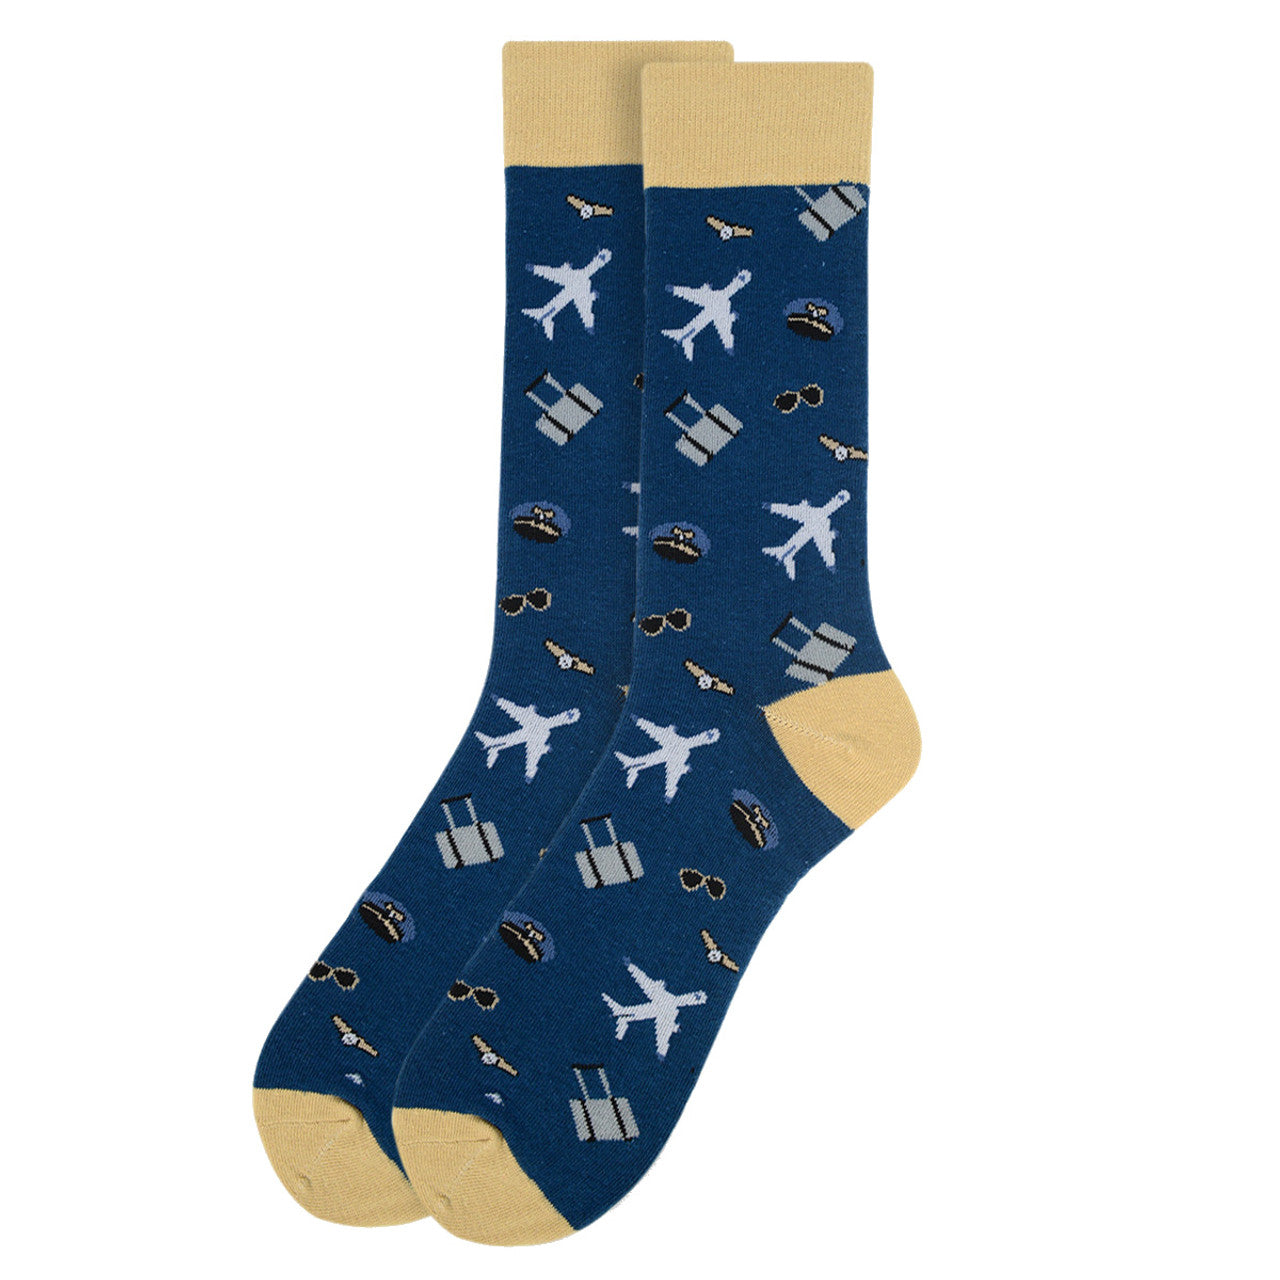 Men's Aviation Socks - Perfect for the pilot or traveler